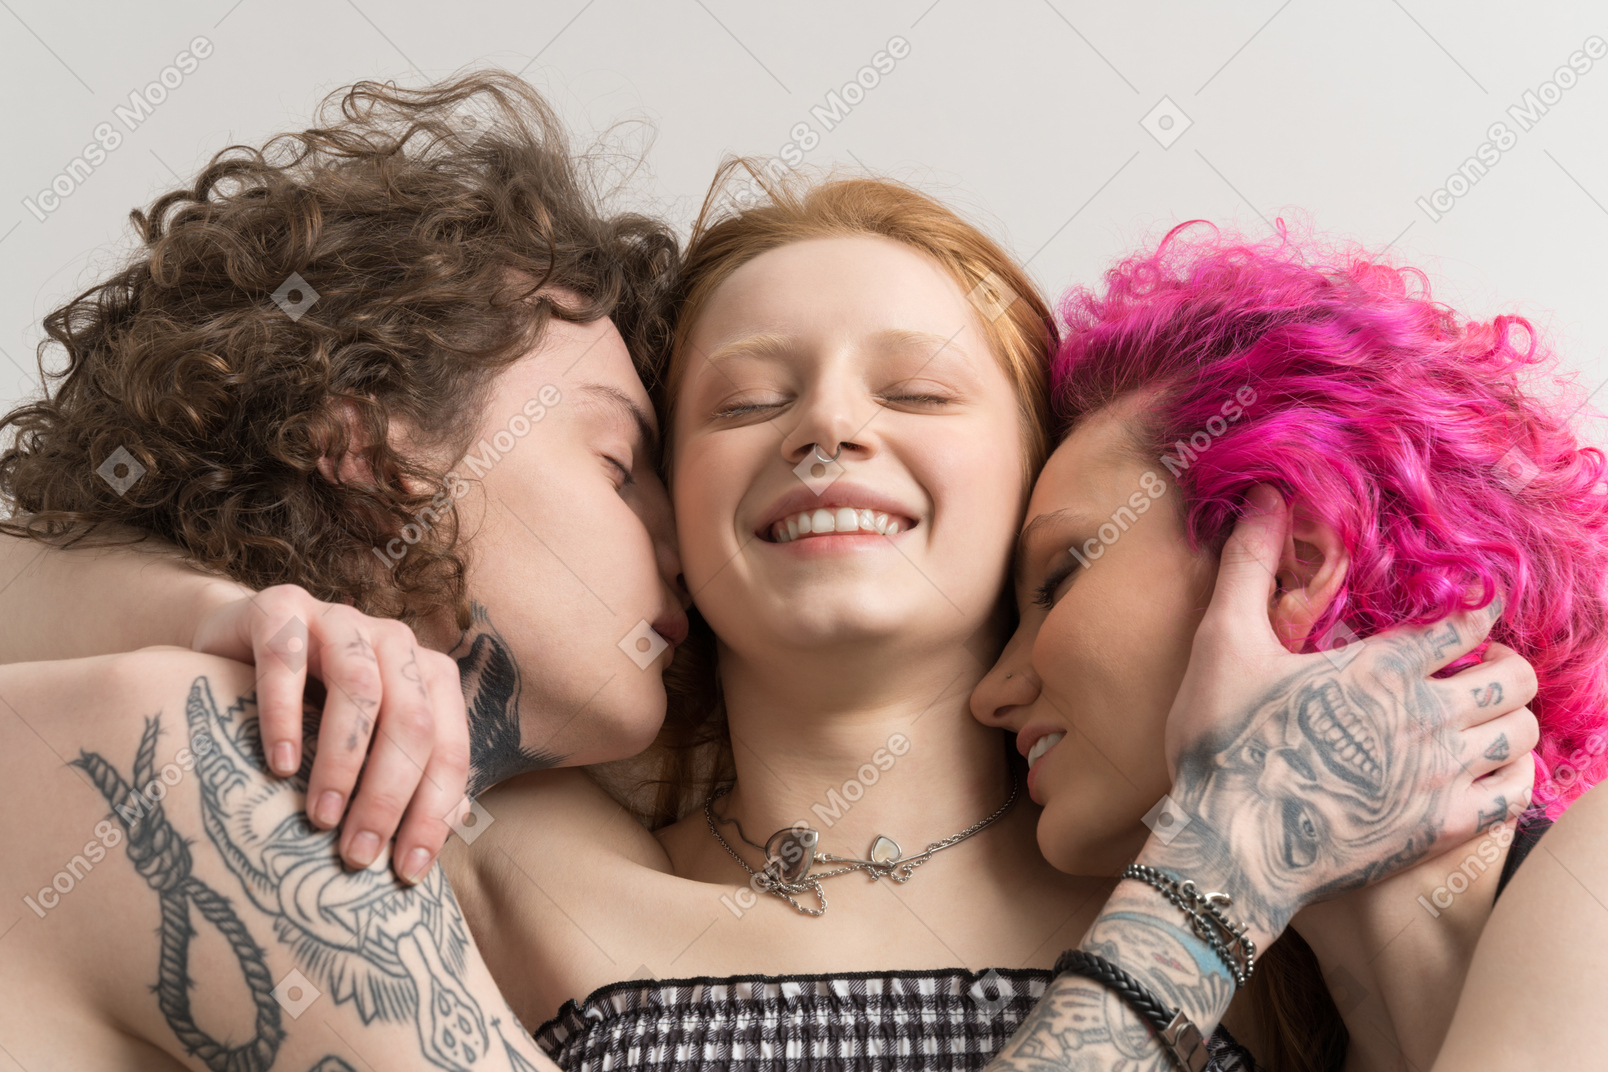 Gruppe von drei teenagern, die zusammen schlafen